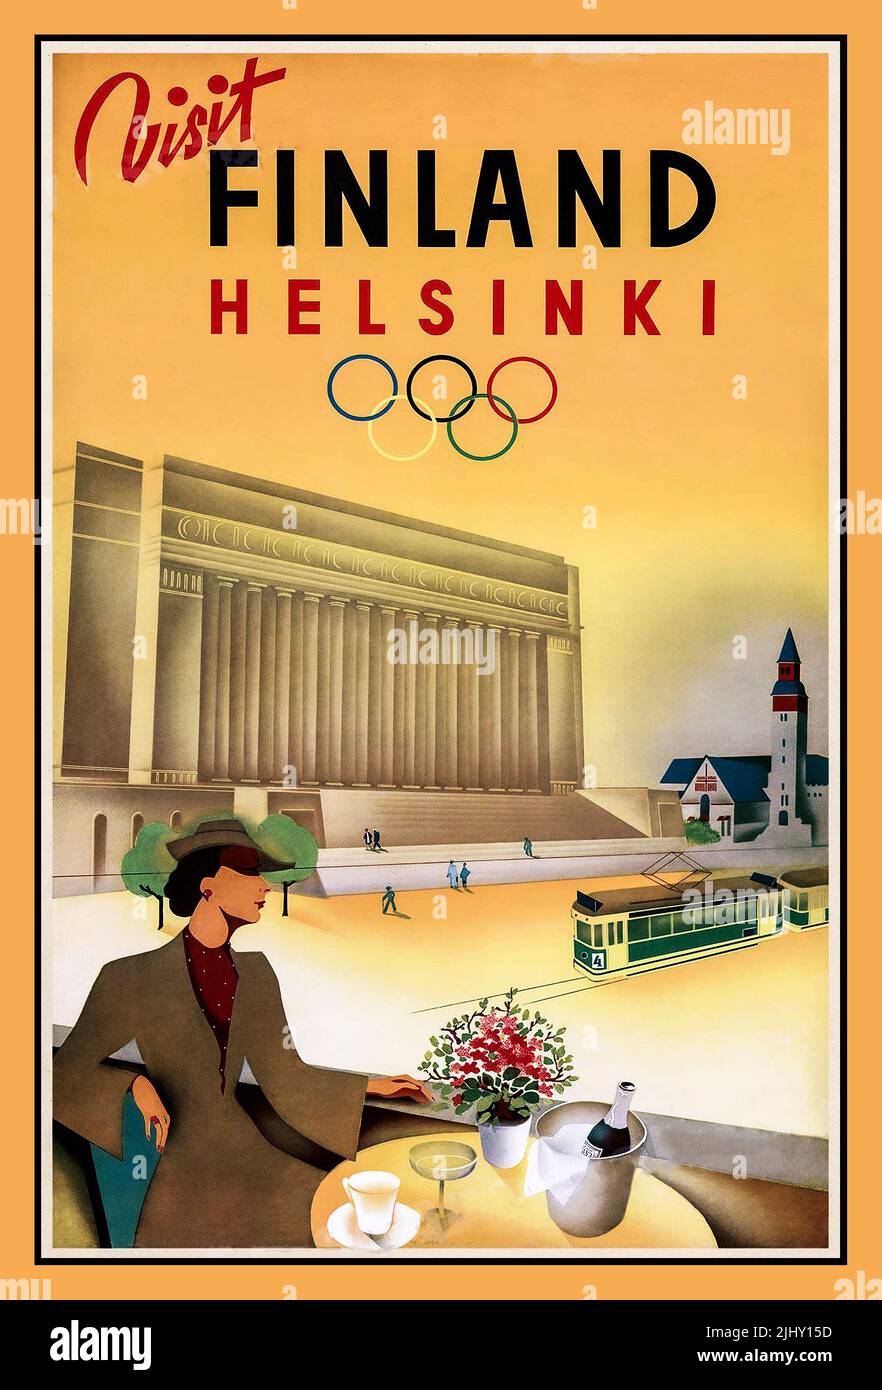 Póster de viaje de la época de los años 50 'Visit Finland': Póster de los Juegos Olímpicos de verano de 1952 en Helsinki, Finlandia, que incluye a una elegante dama con botella de champán y una refrescante sesión en el Alfresco Helsinki Cafe con el tranvía verde de Helsinki detrás. Foto de stock